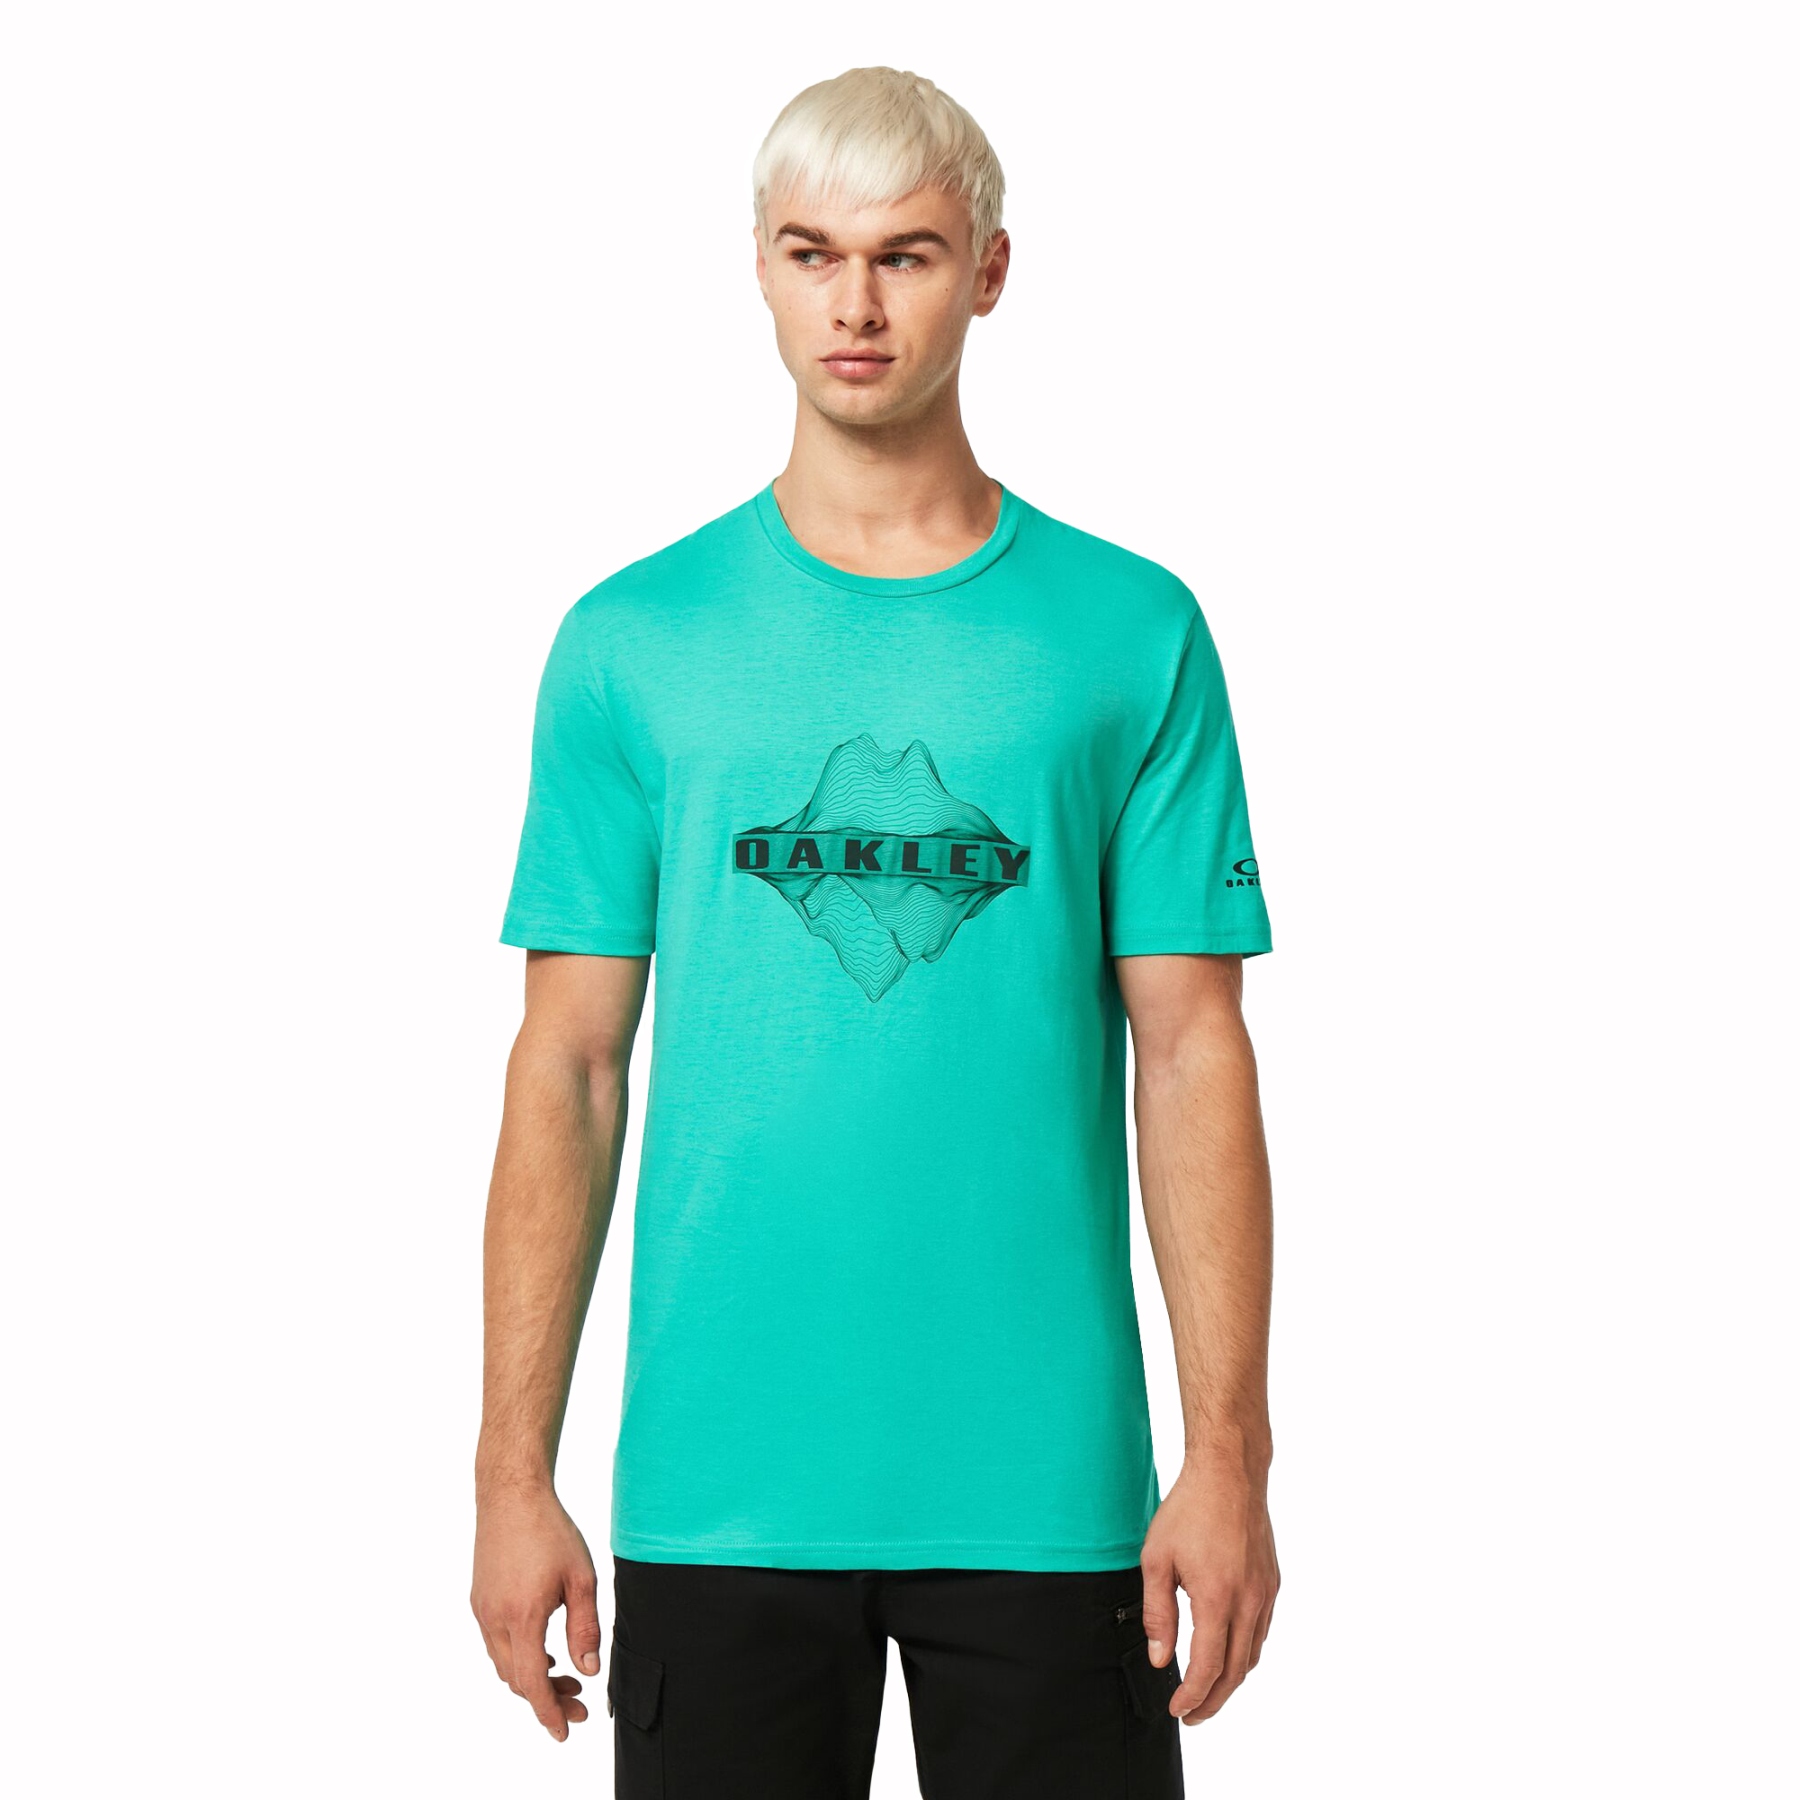 Produktbild von Oakley Above And Below T-Shirt Herren - Mint Green